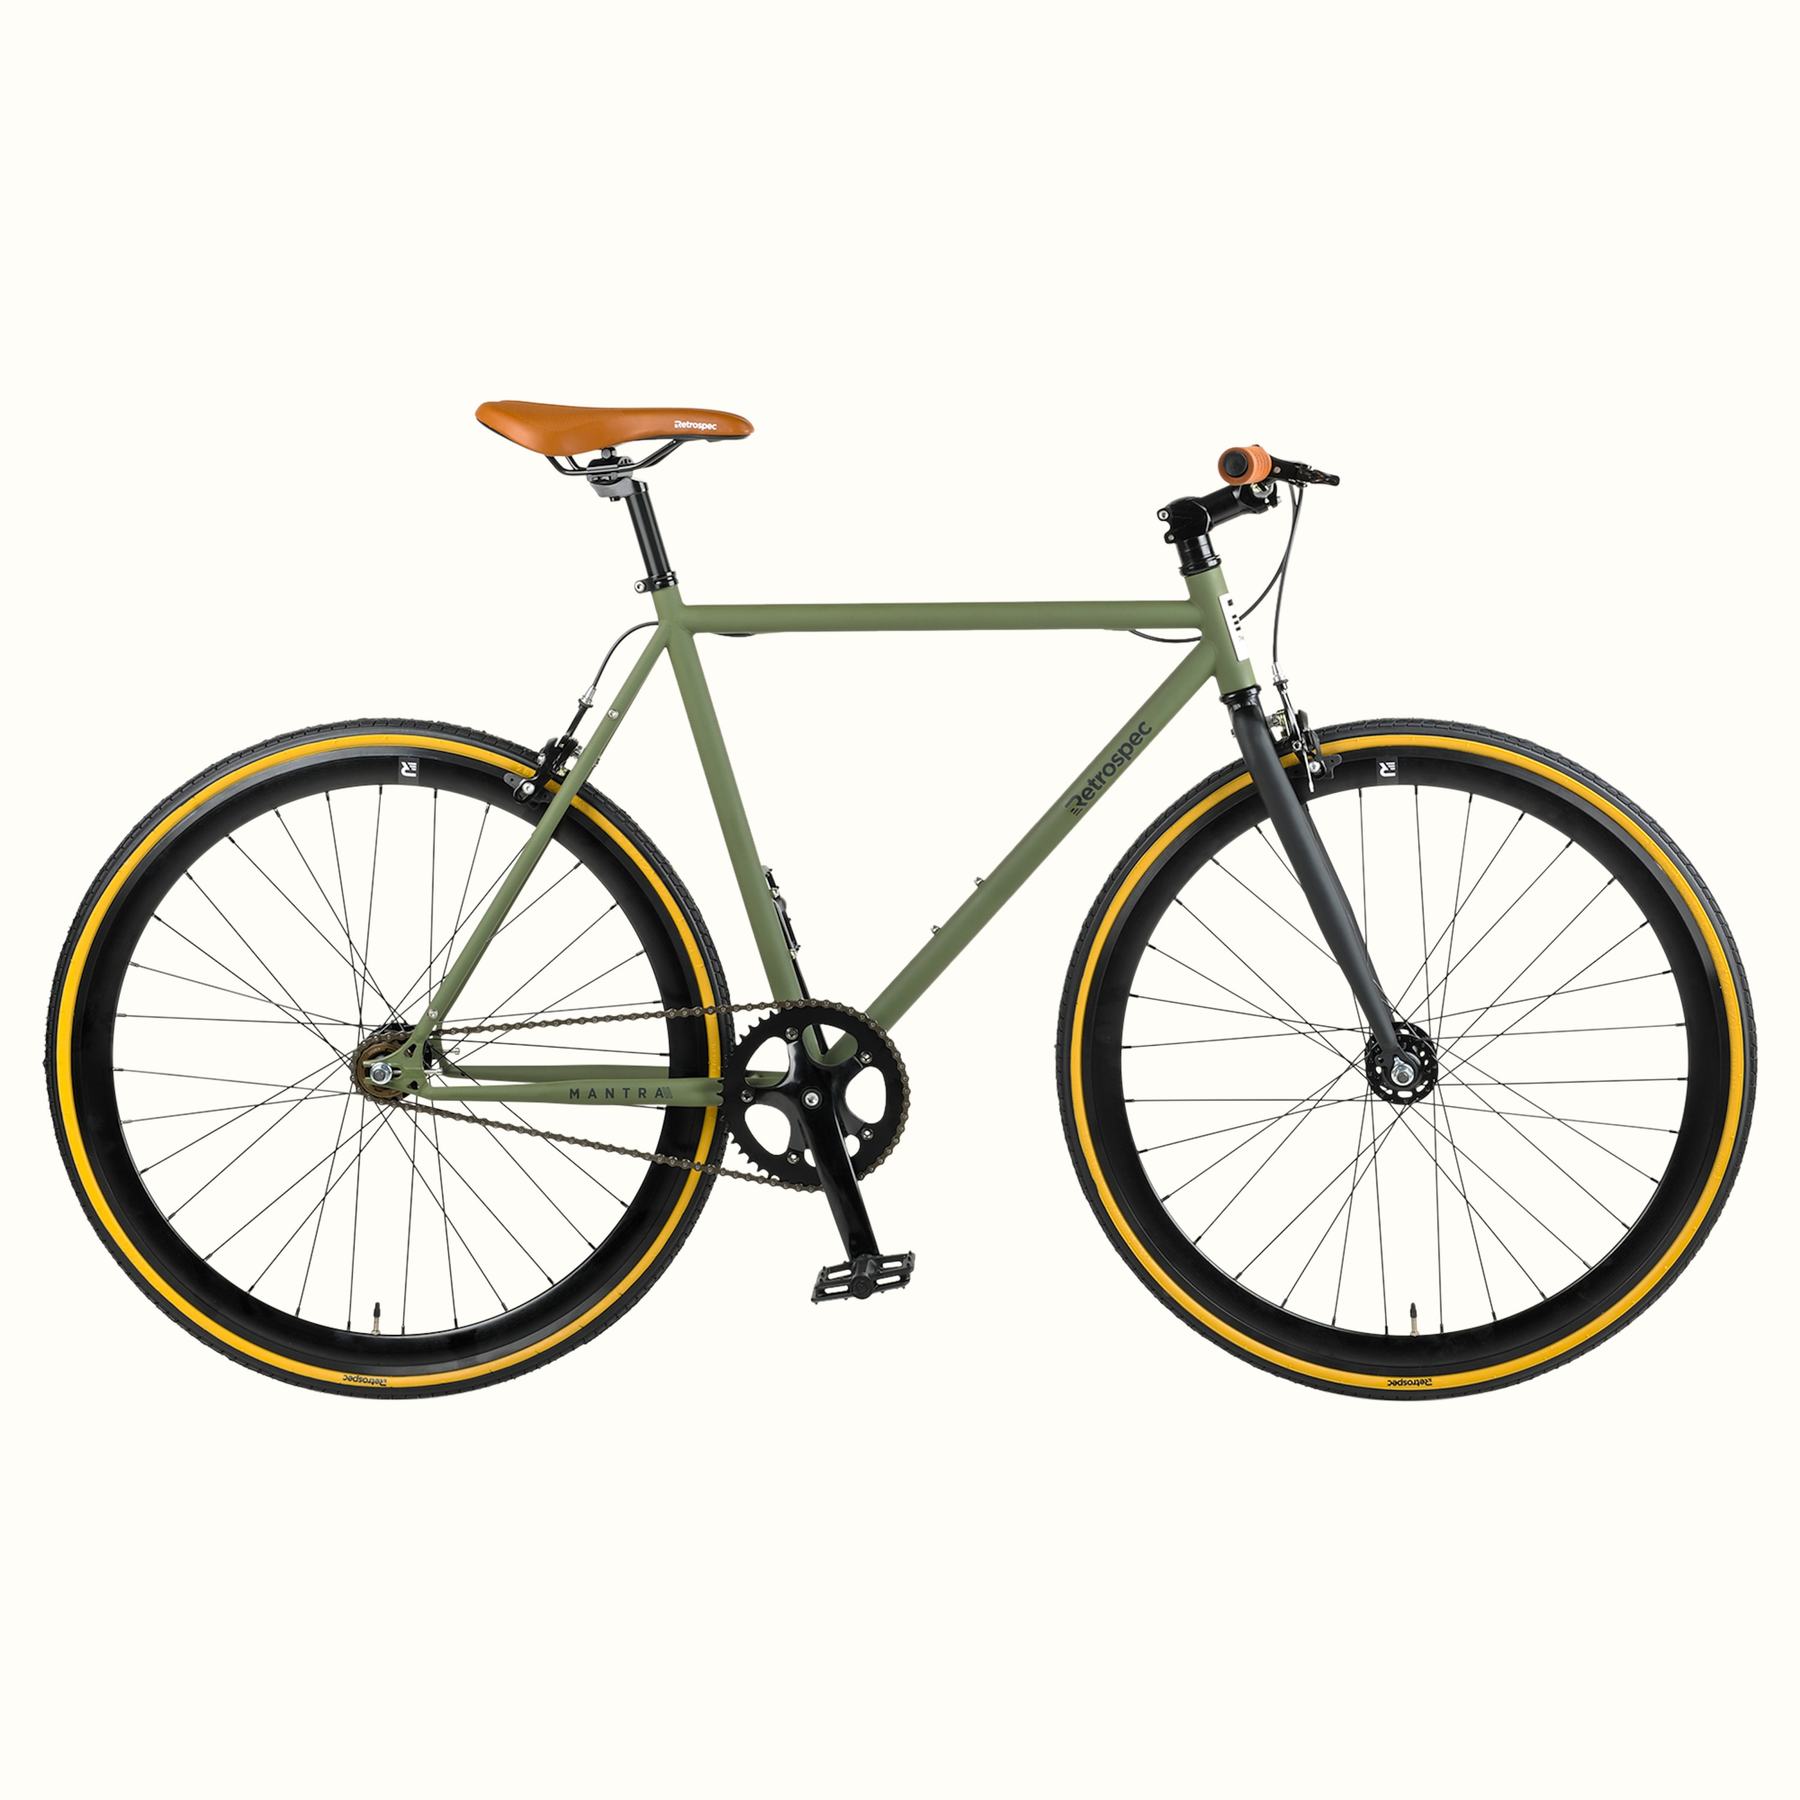 49cm bike